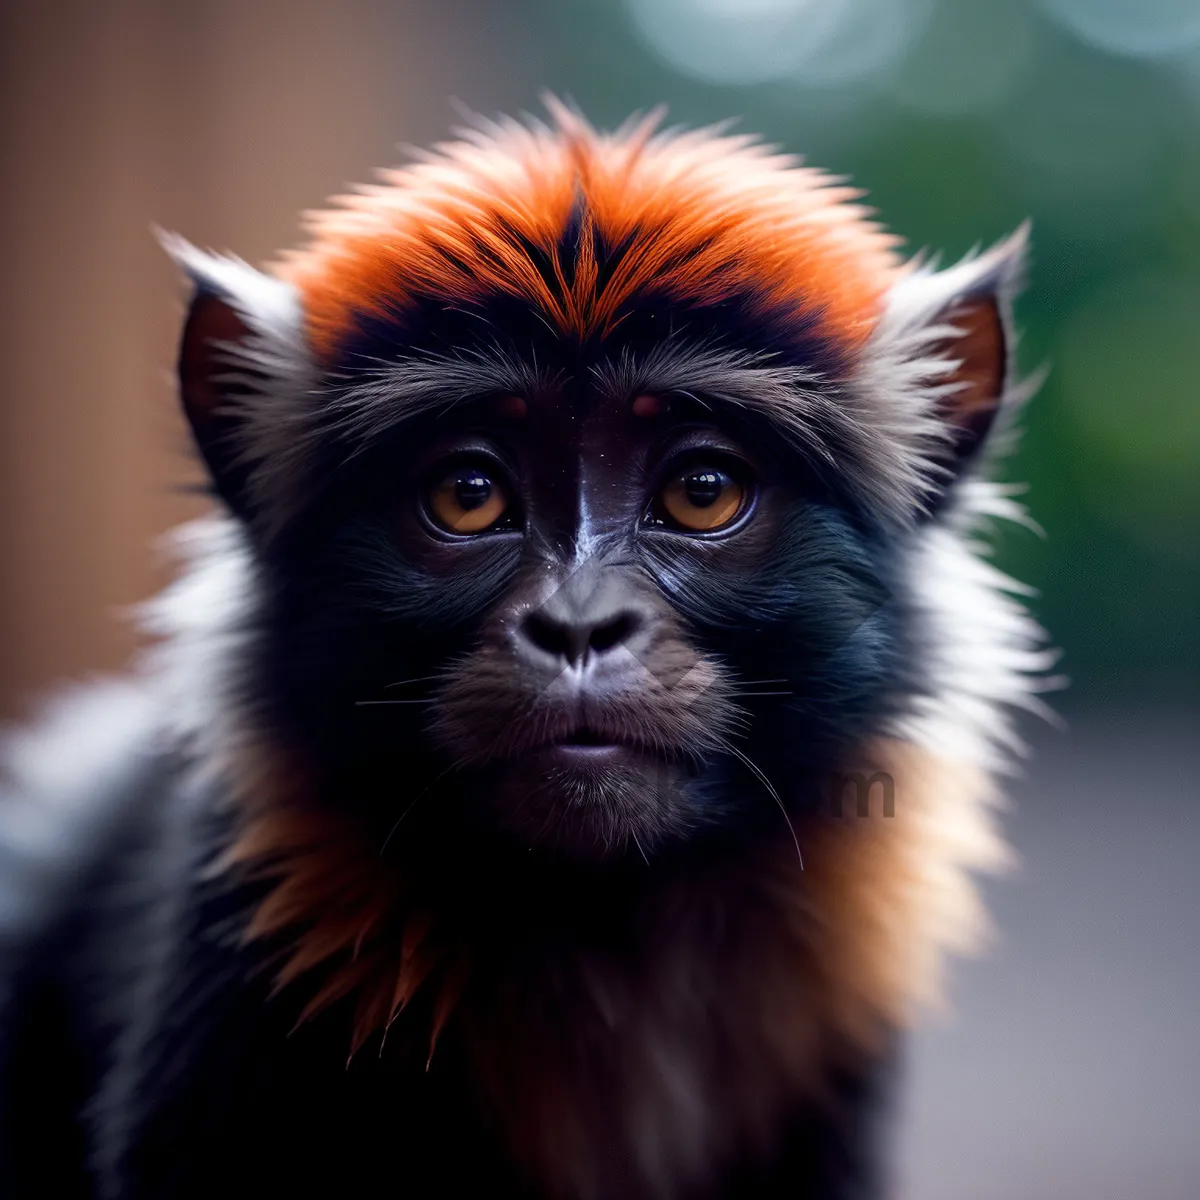 Picture of Furry Jungle Primates in Natural Wildlife Habitat